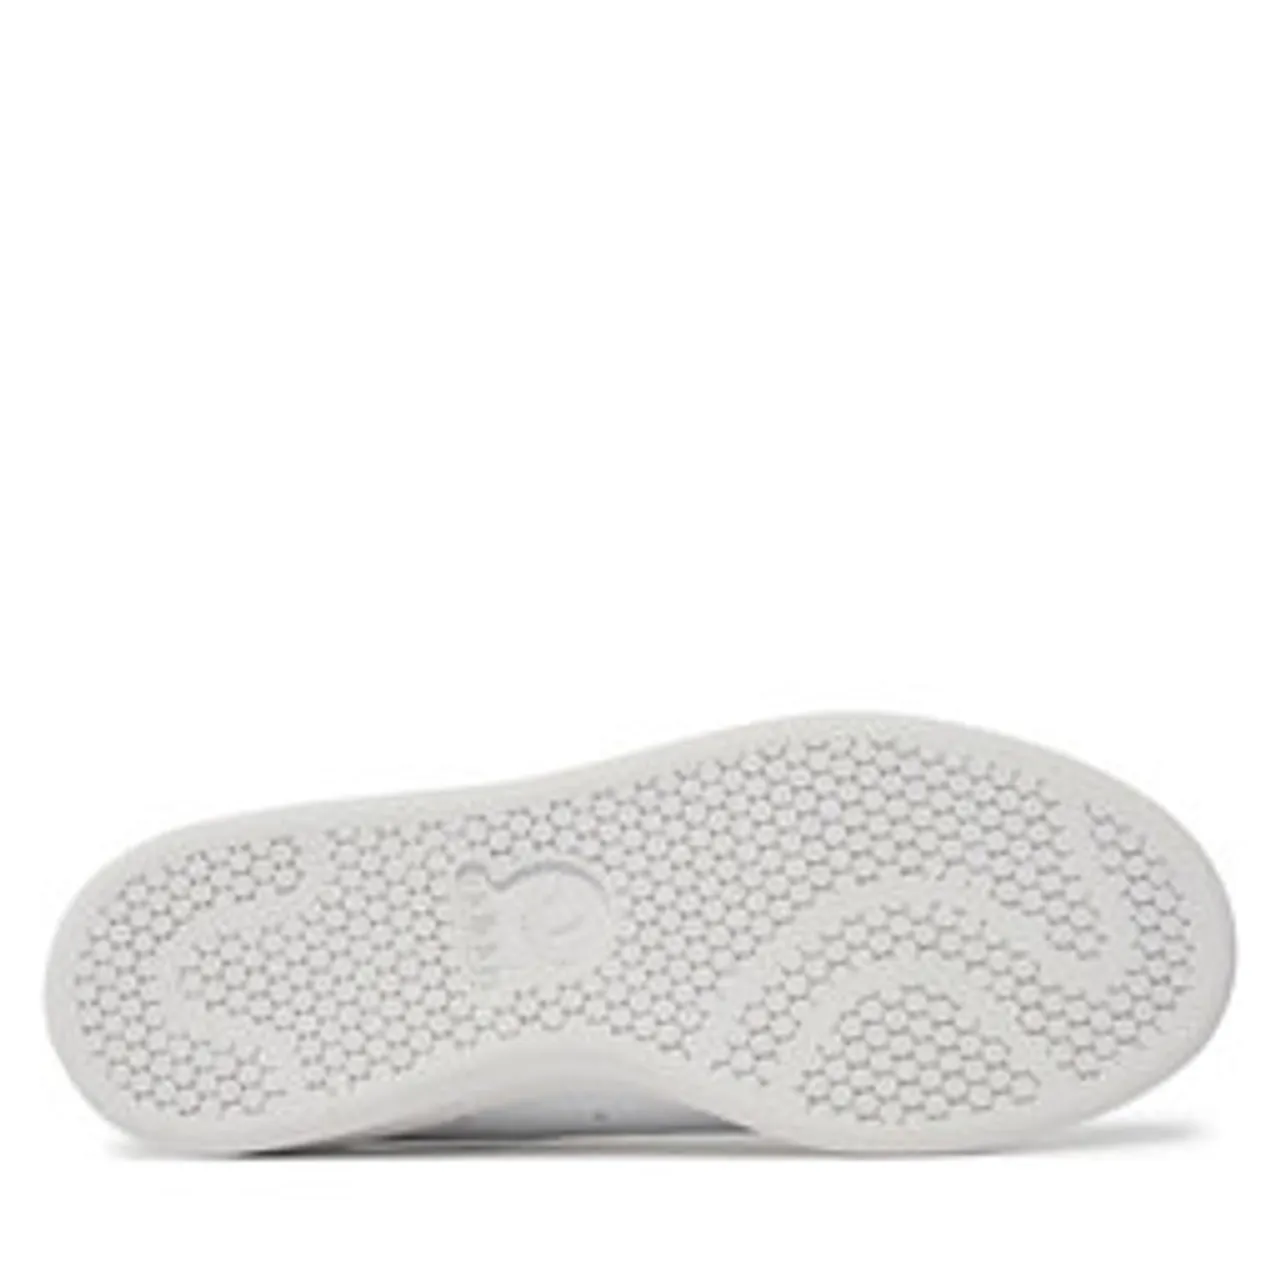 Sneakers adidas Stan Smith W Q47226 Weiß